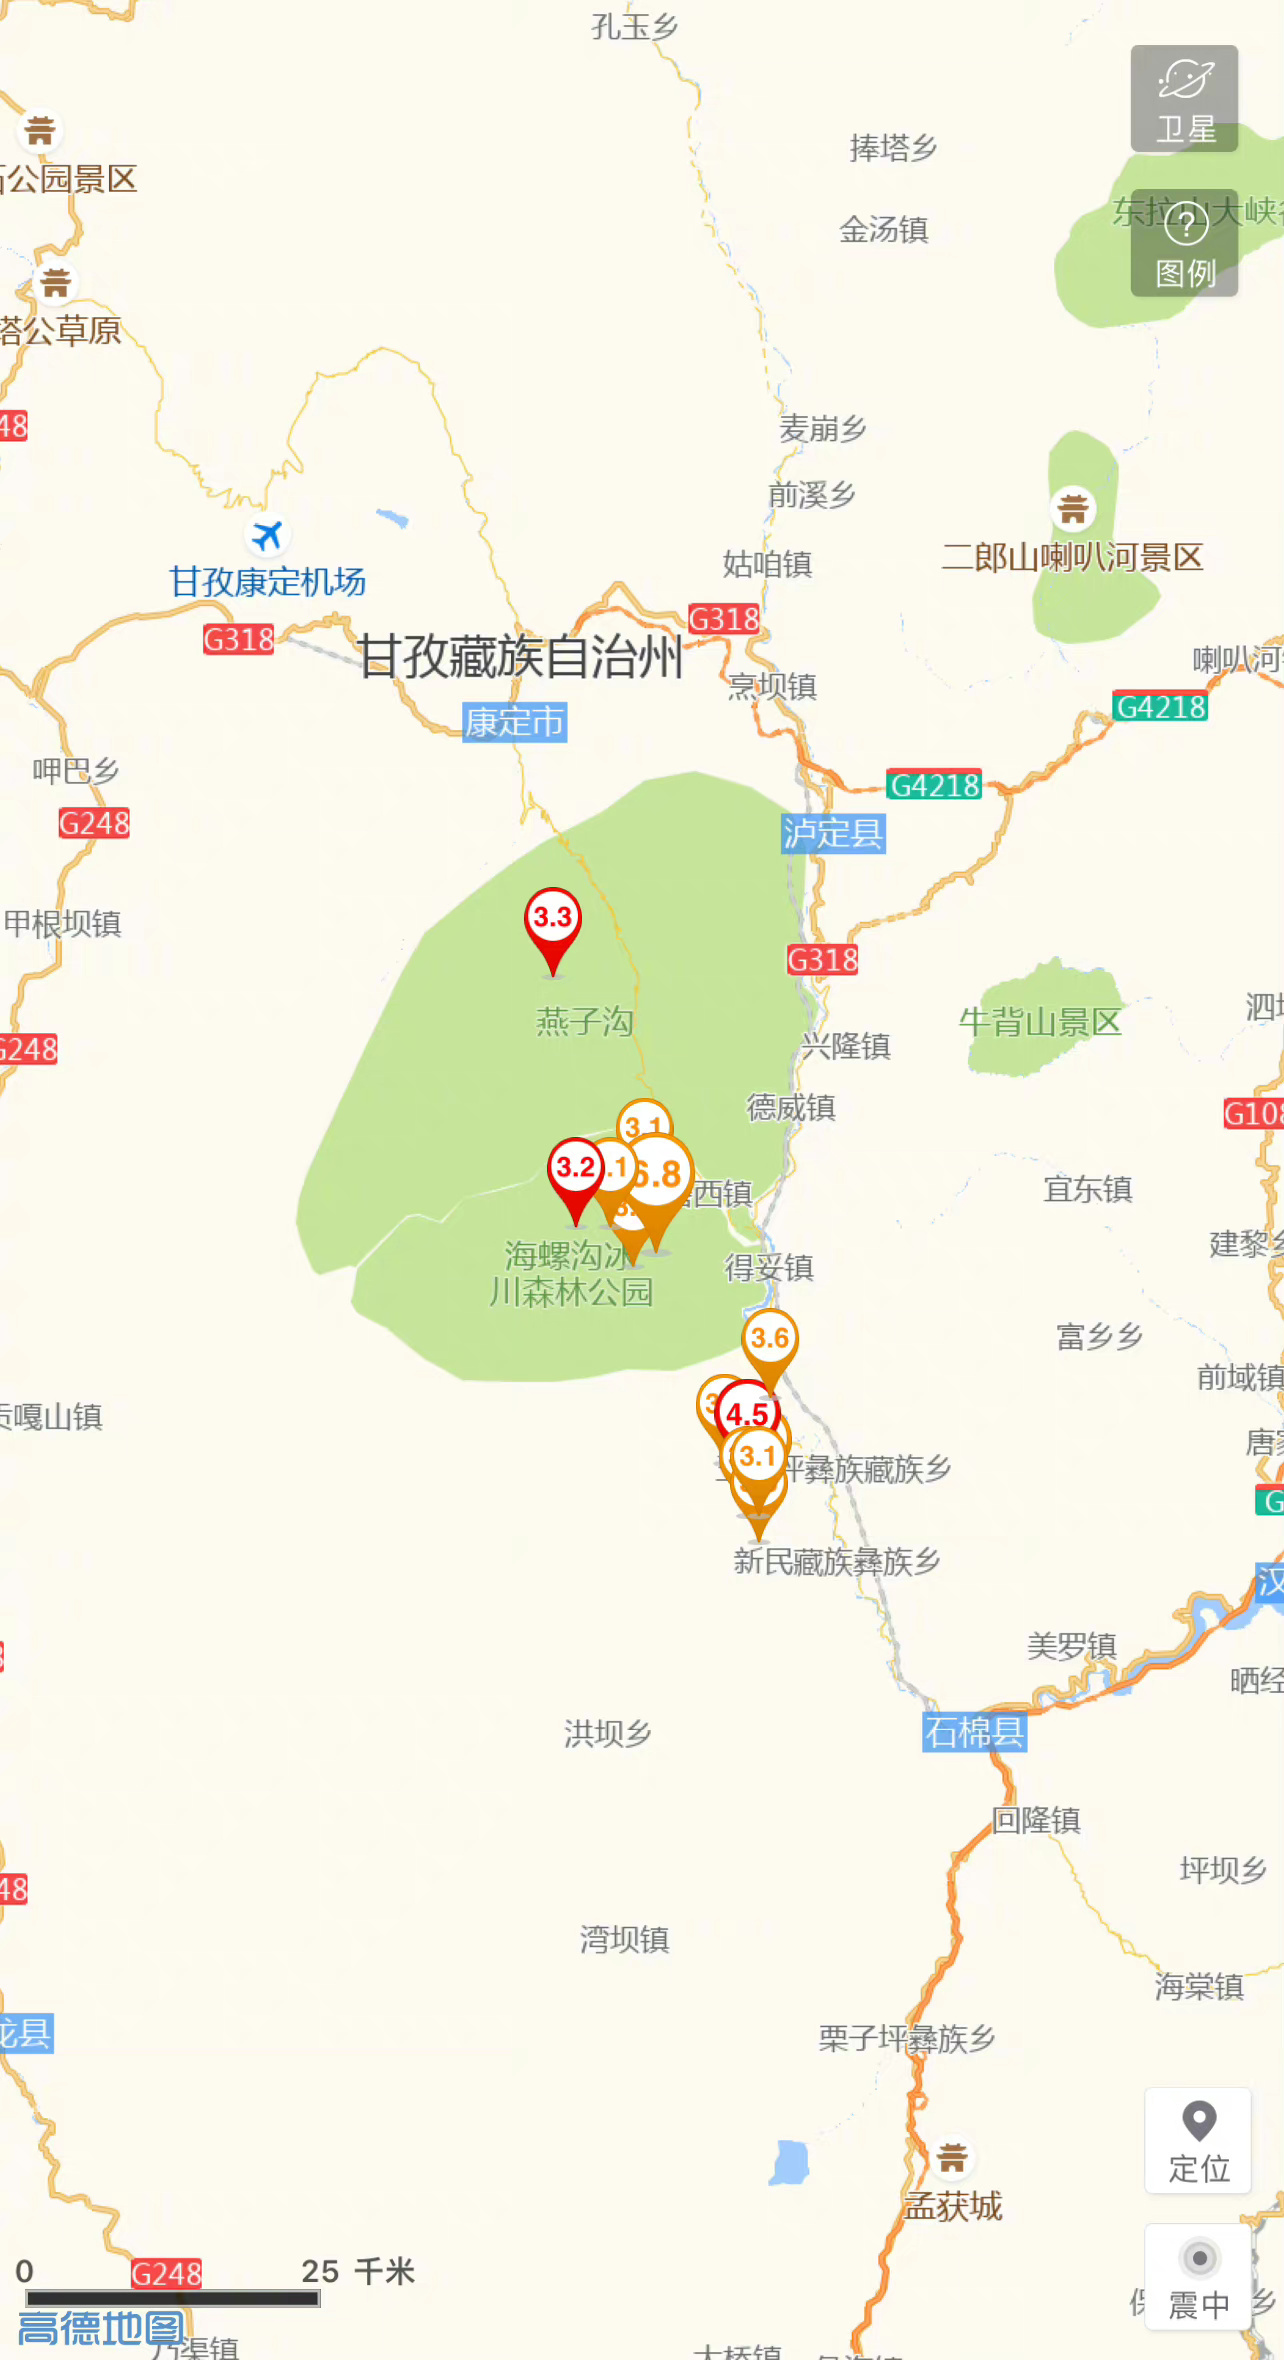 四川泸定地震已记录到3.0级及以上余震13次